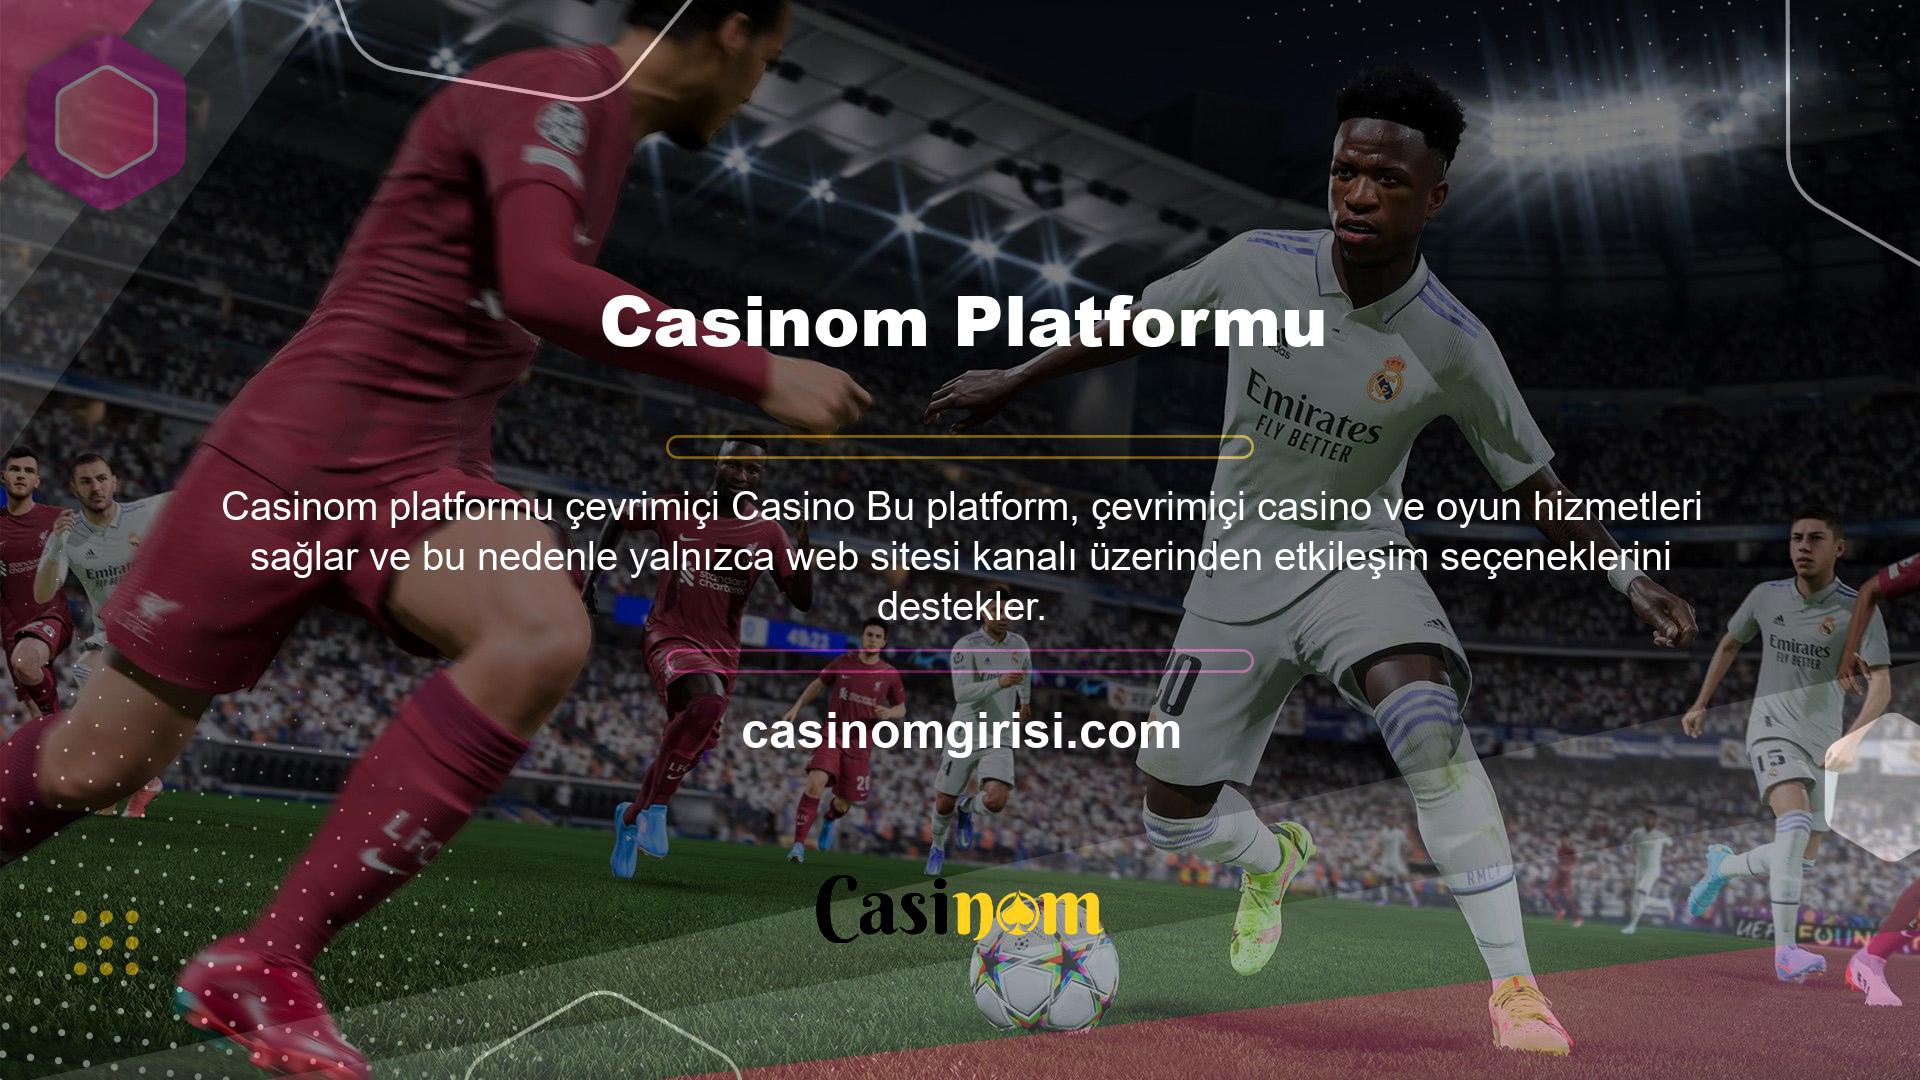 Casinom çevrimiçi destek web sitesi kullanıcılarına ve siteye üye olmak isteyen kullanıcılara çevrimiçi destek hizmetleri verilmektedir